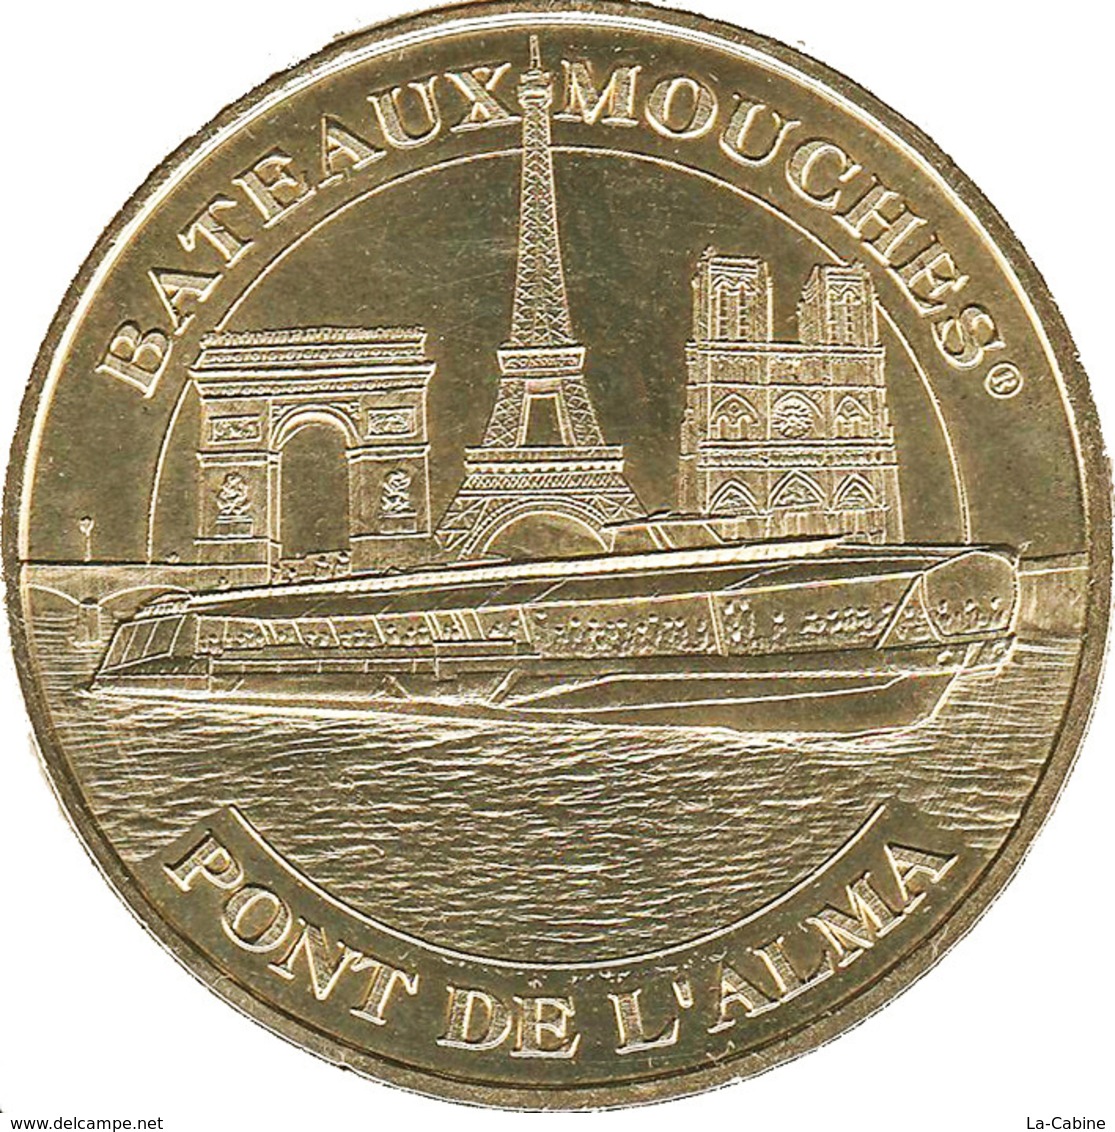 75 PARIS BATEAUX MOUCHES PONT DE L'ALMA MÉDAILLE TOURISTIQUE MONNAIE DE PARIS 2019 JETON MEDALS TOKENS COINS - 2019